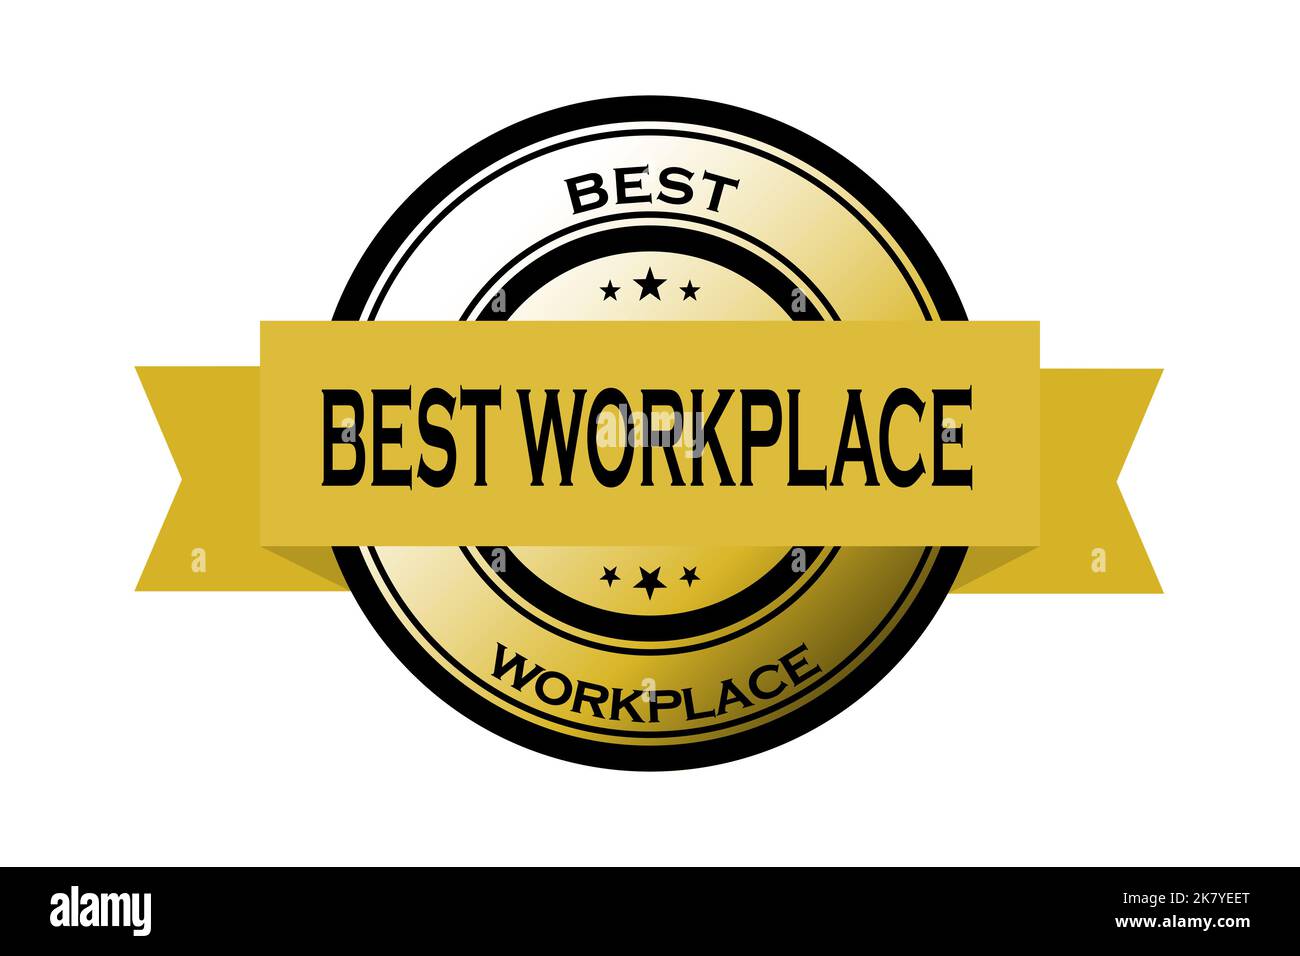 Il miglior logo sul luogo di lavoro con un nastro, che simboleggia gli sforzi dell'azienda per raggiungere una soddisfazione dei dipendenti eccellente. Foto Stock